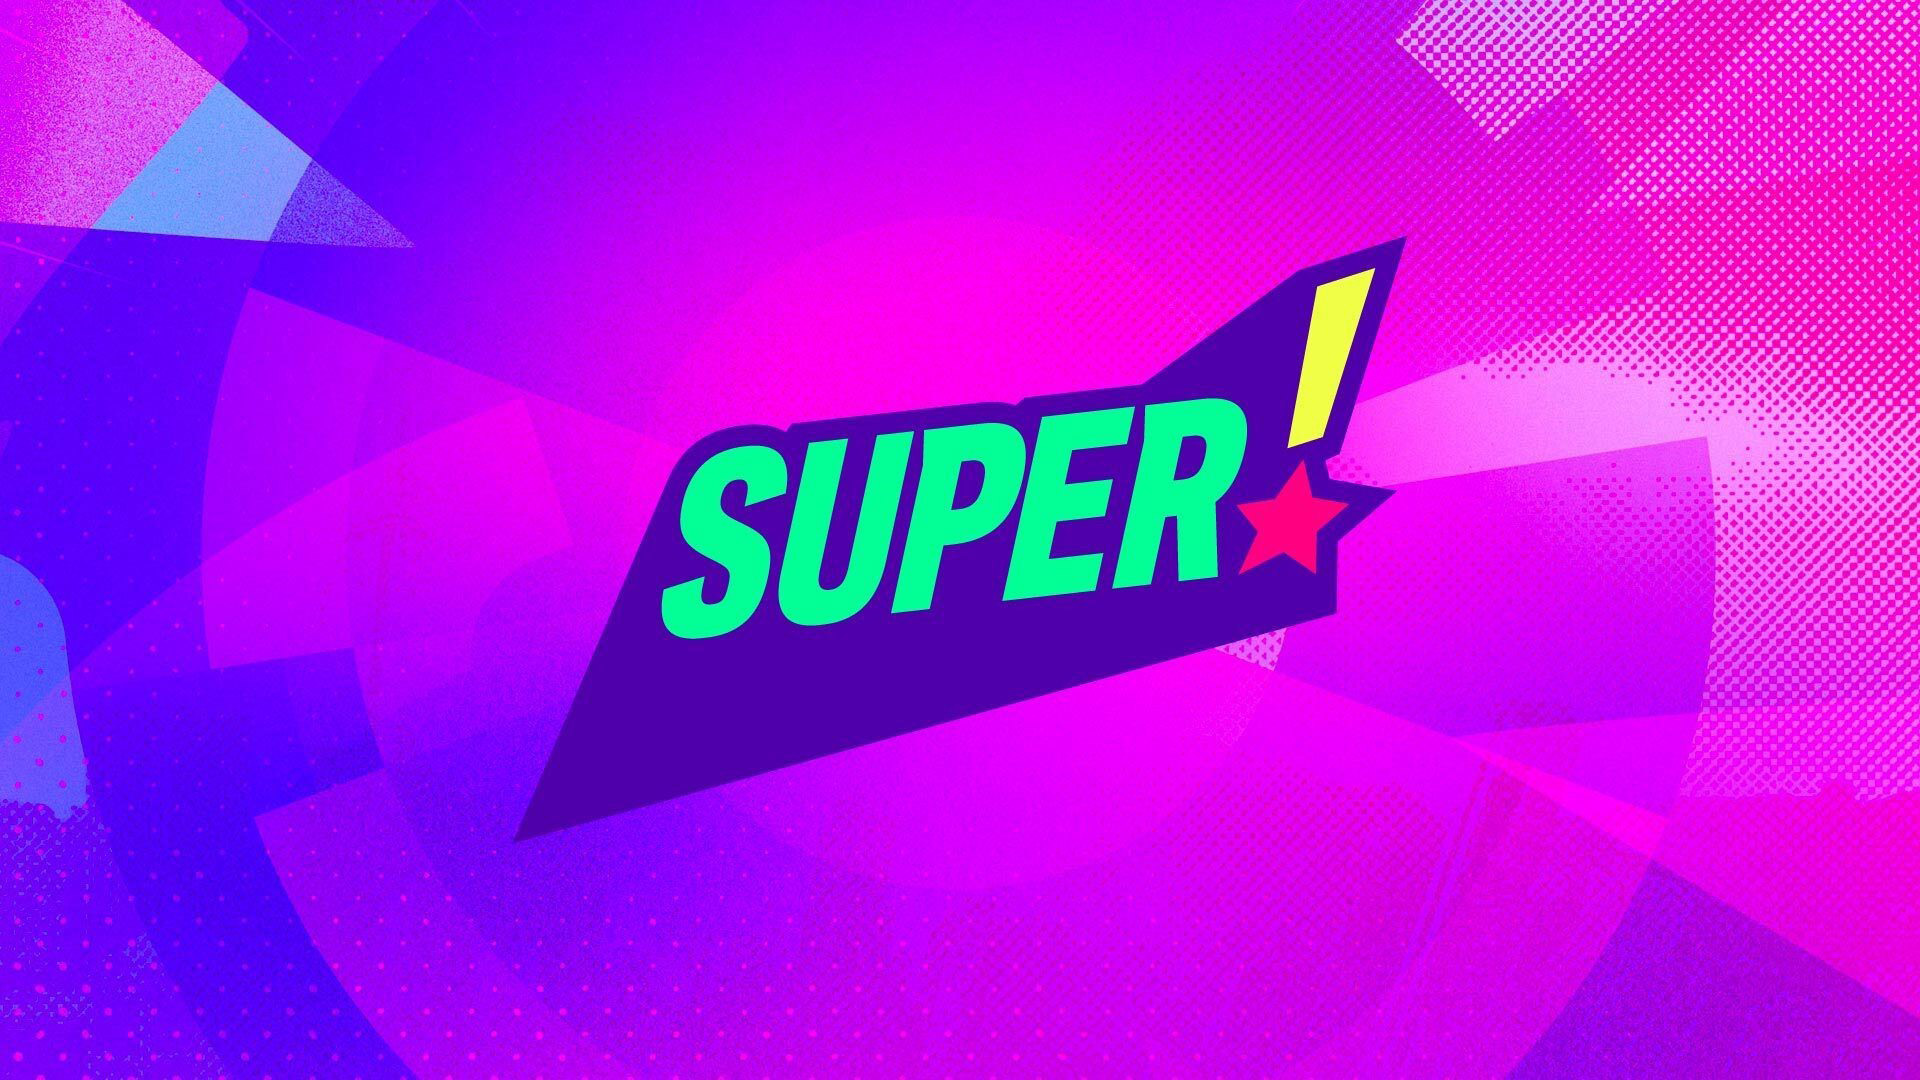 Super| logo tv